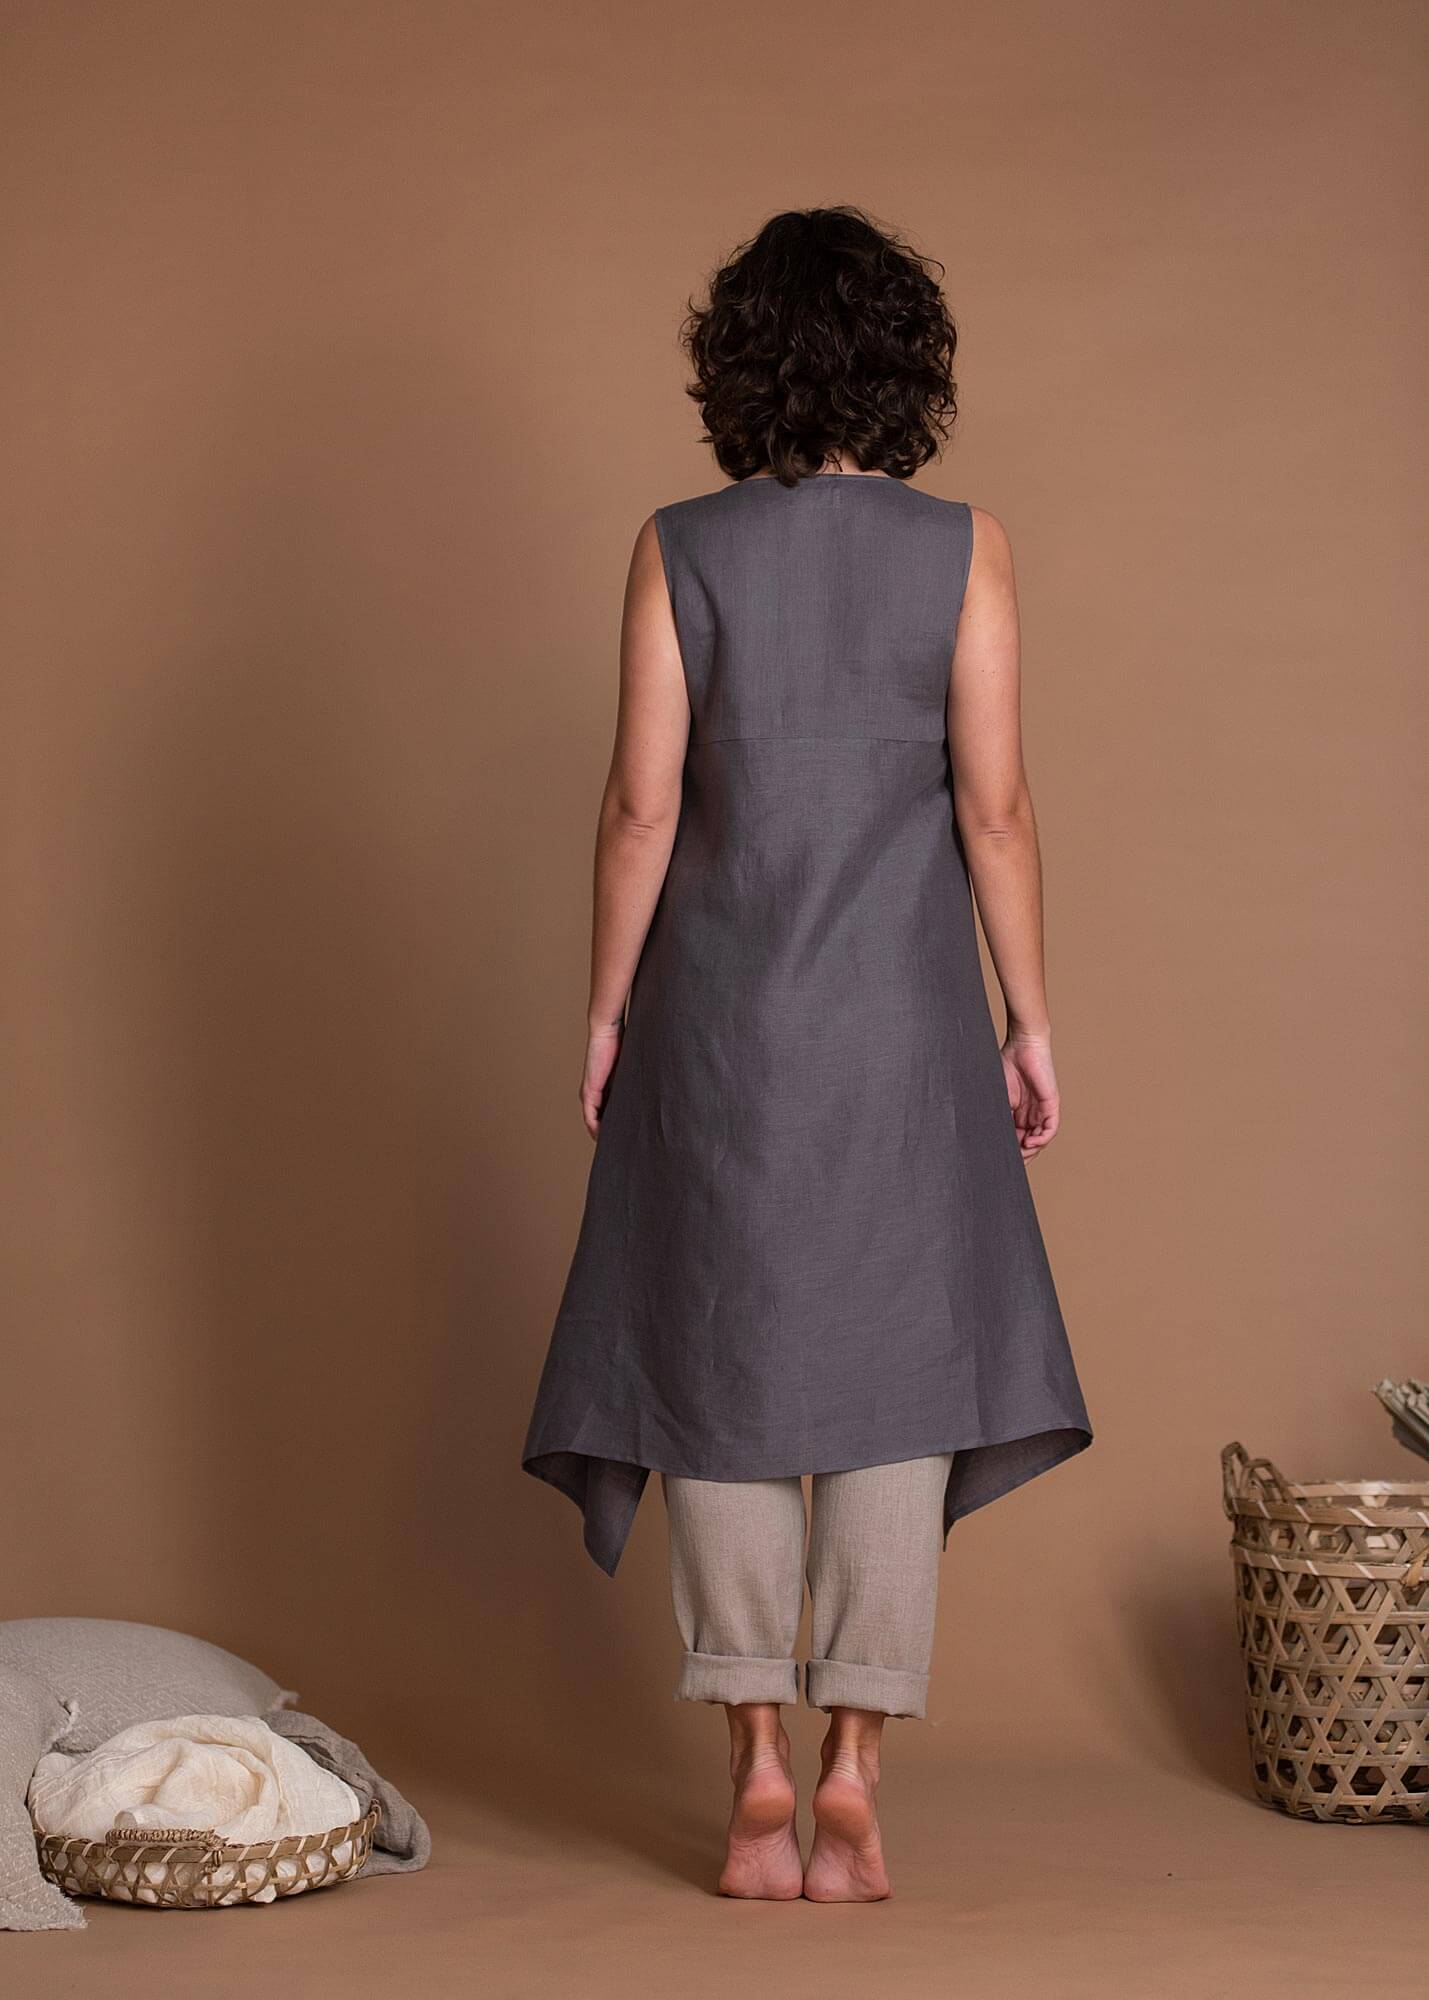 Summer High Low Asymmetric Hem Linen Top Tunic For Women